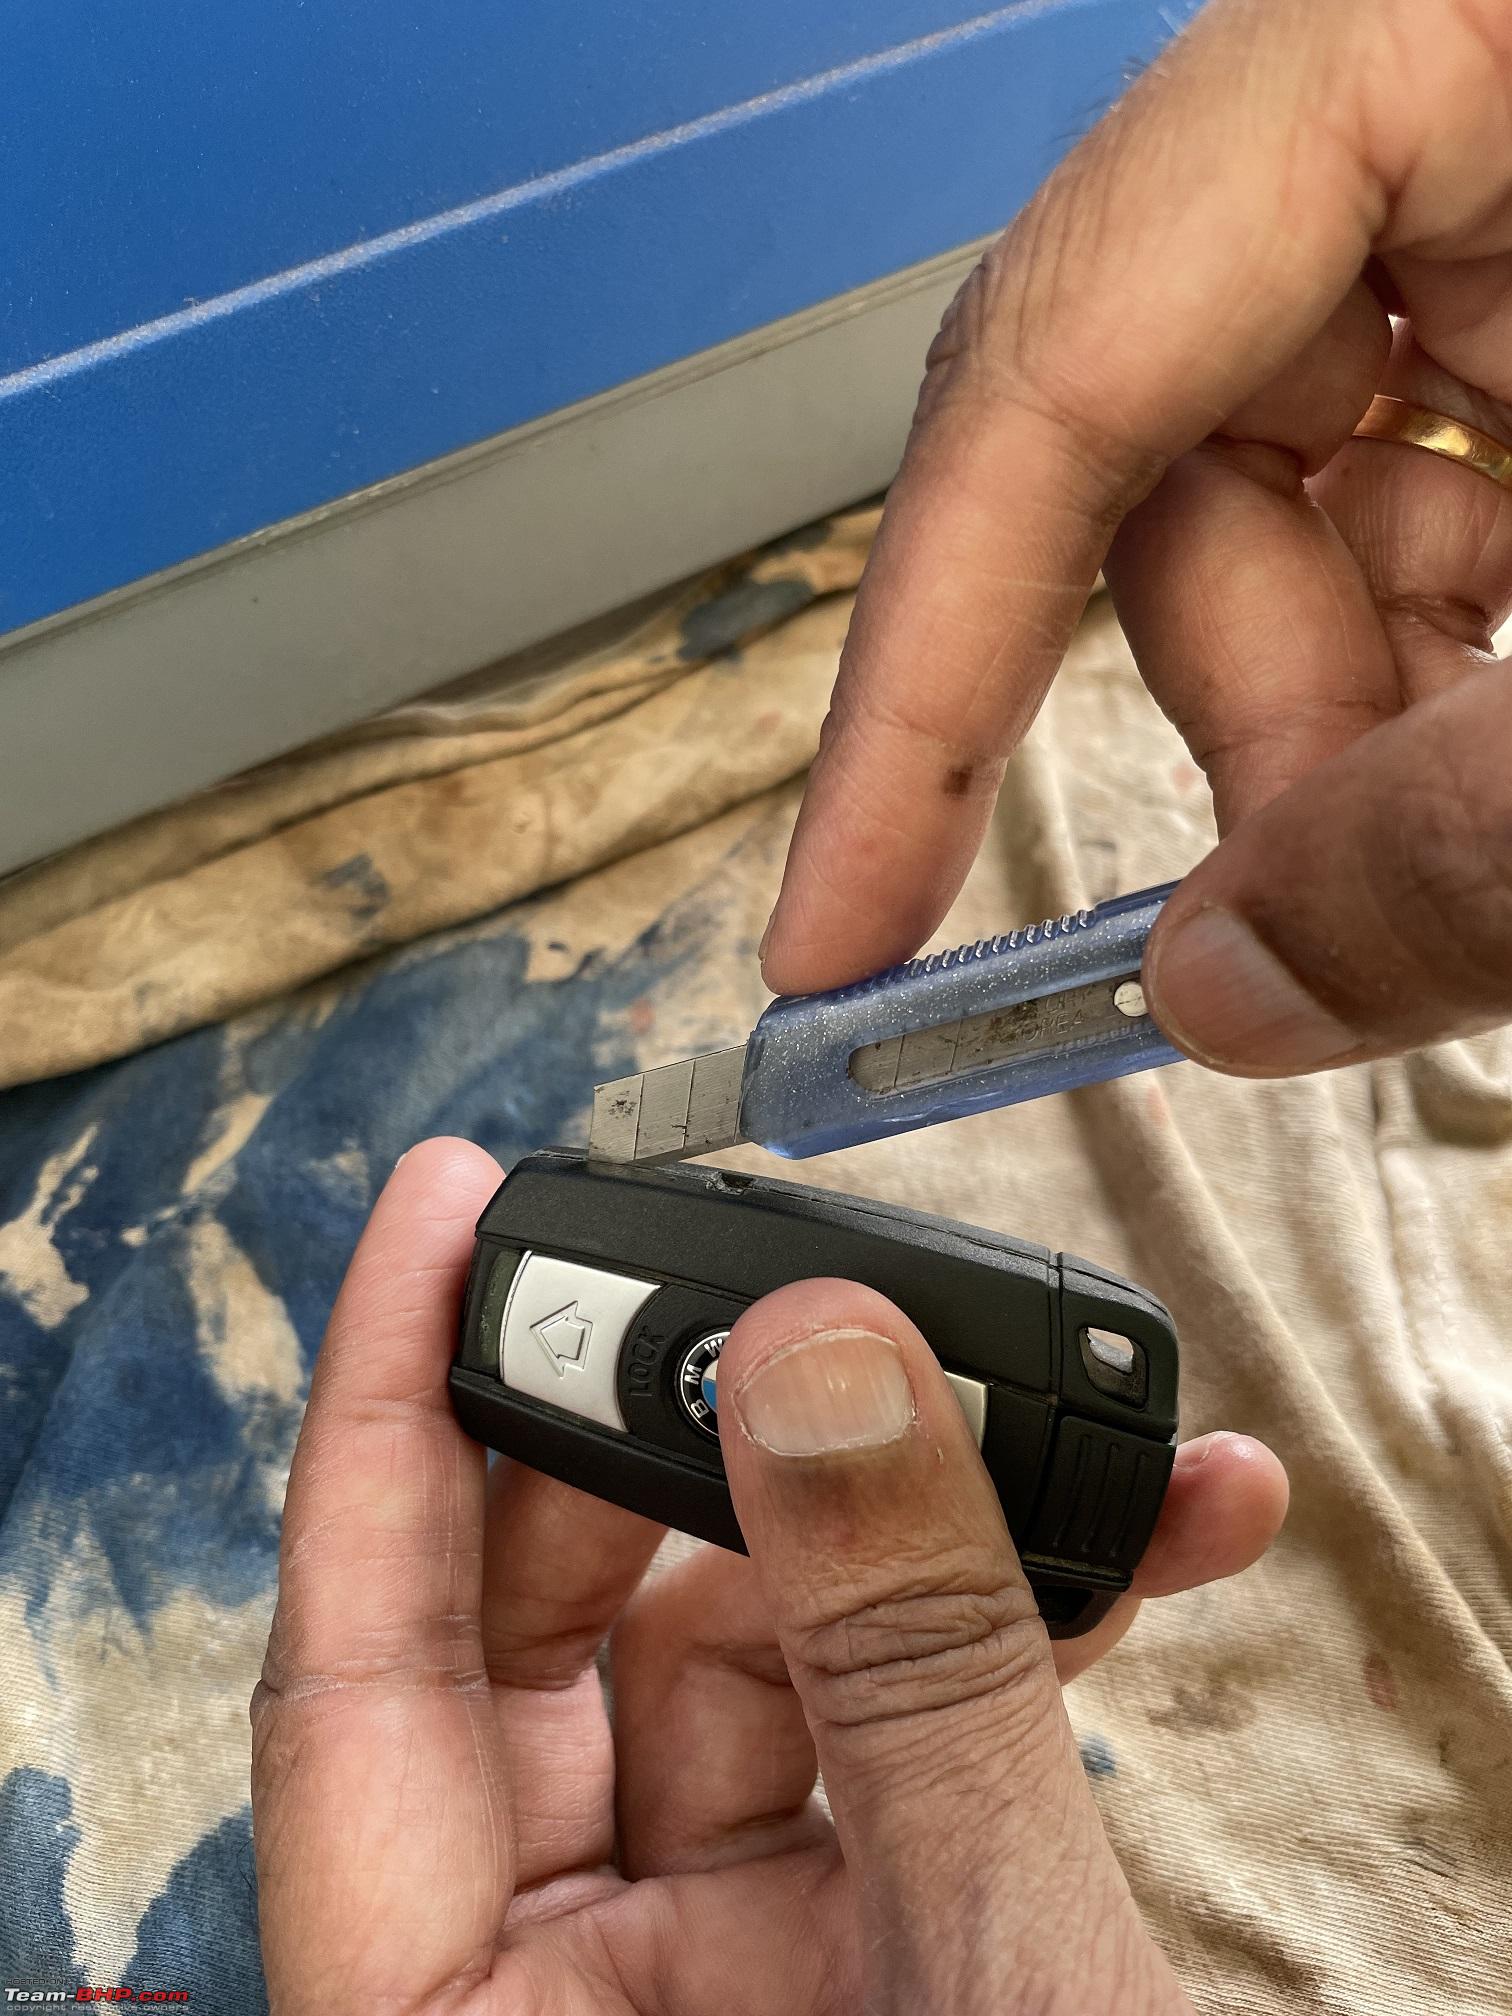 Repairing a BMW Key Fob | A cheaper solution - Team-BHP